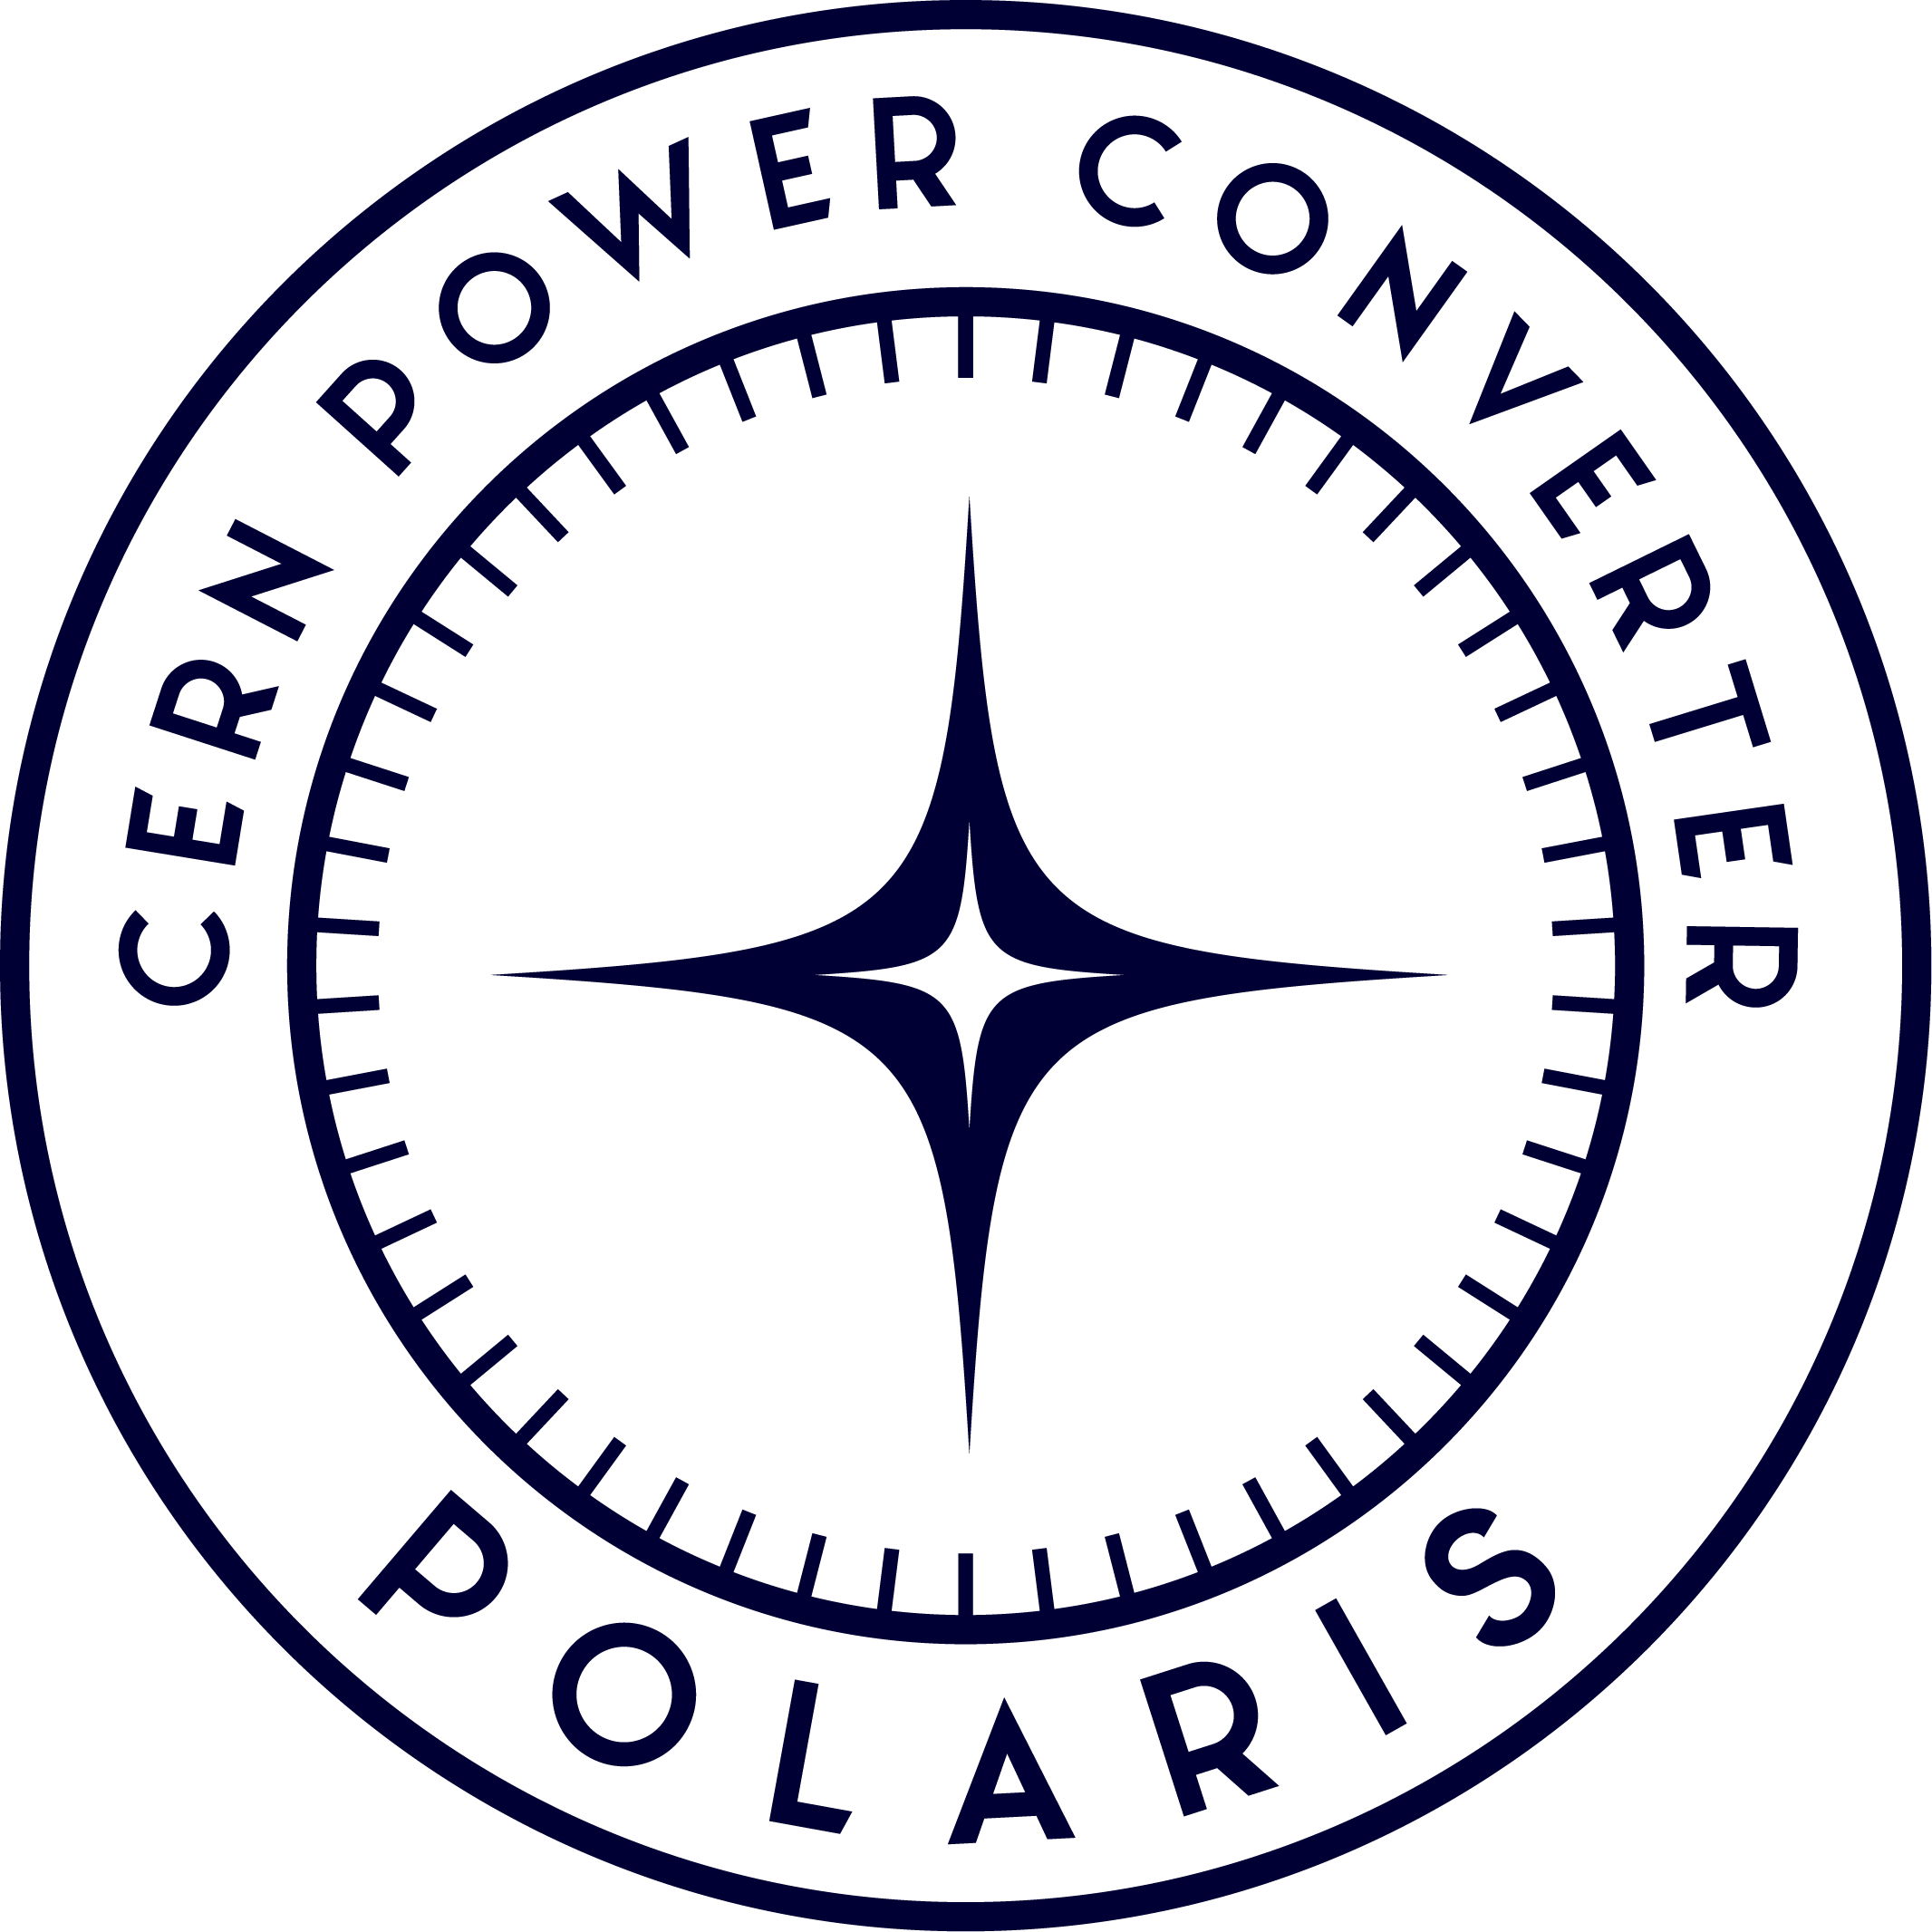 POLARIS logo